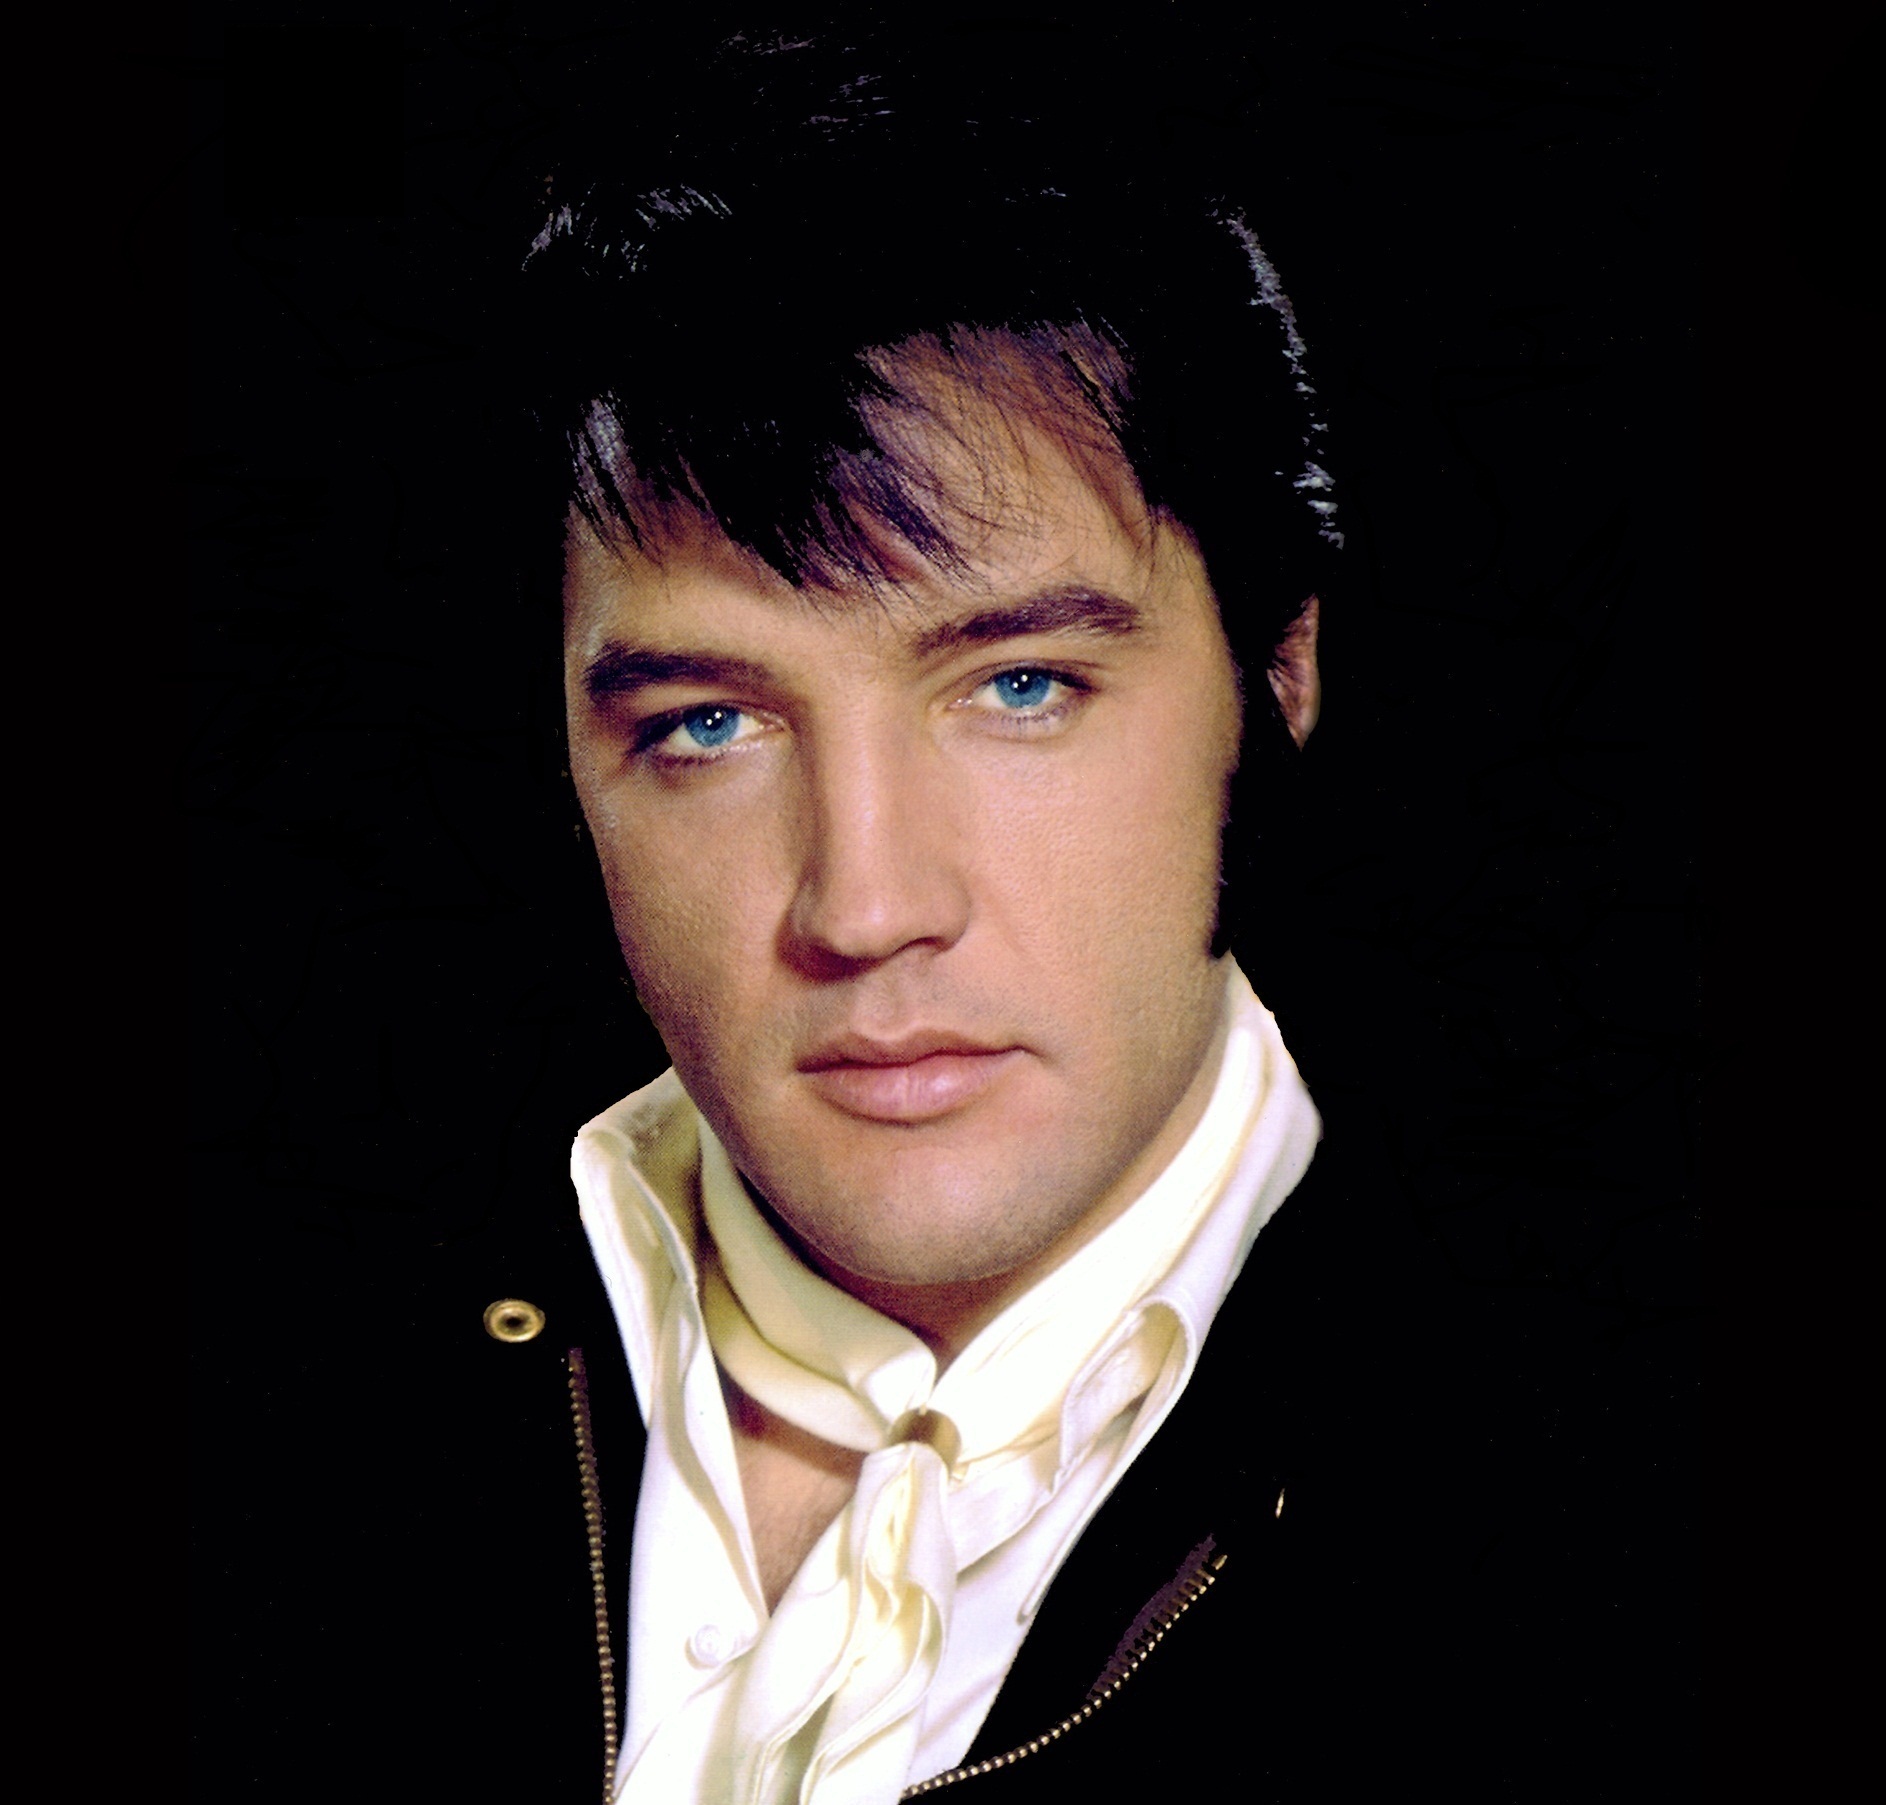 Elvis-Presley-elvis-presley-22316471-1886-1805.jpg